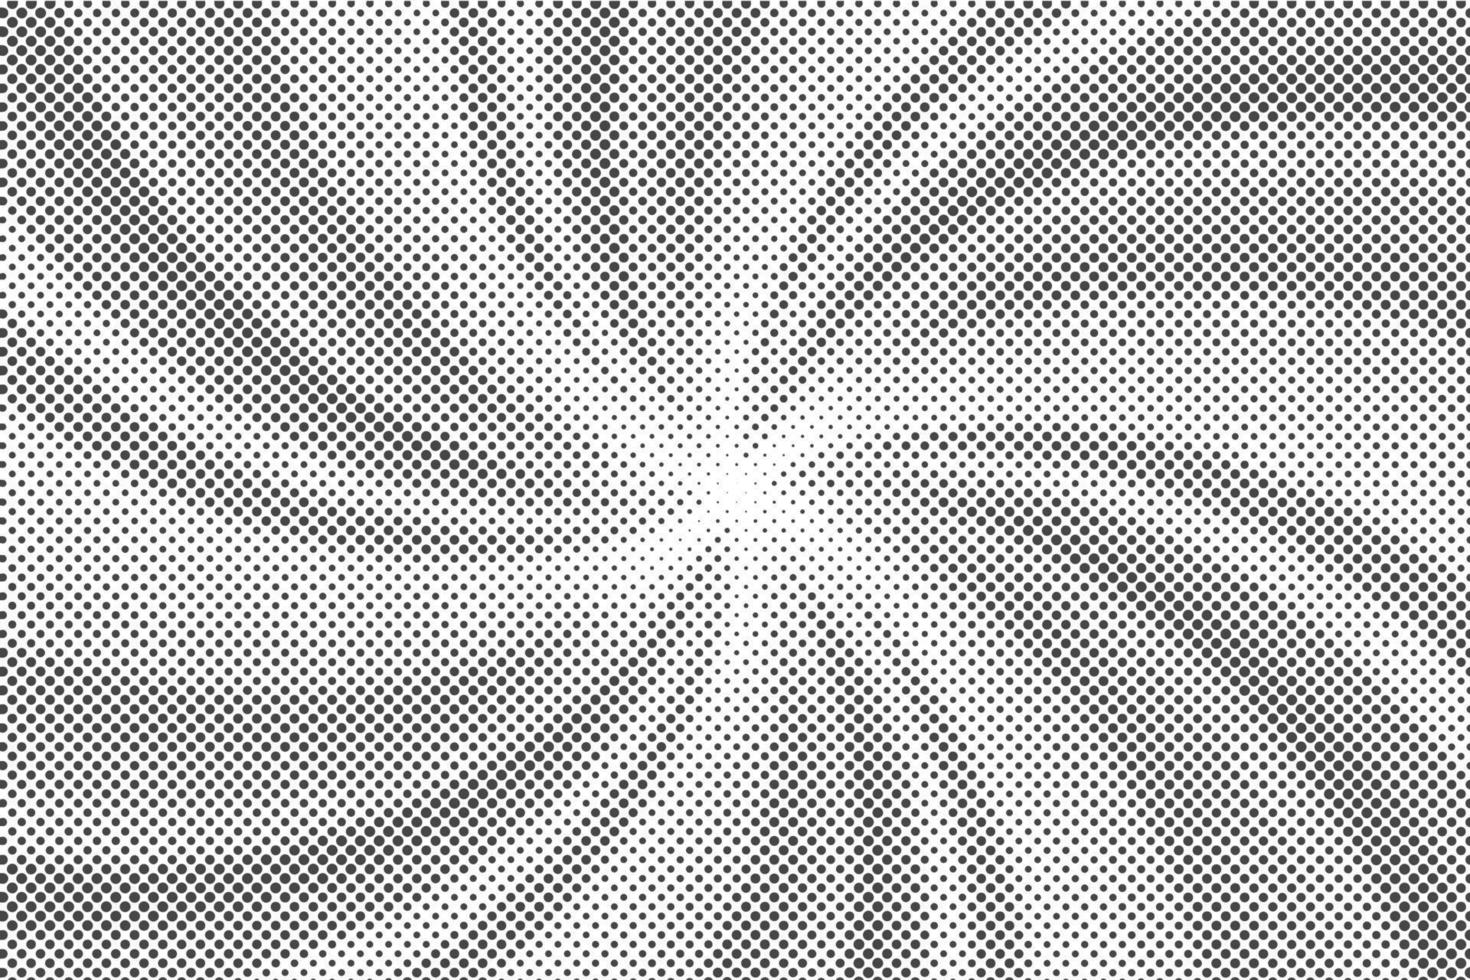 Sonne Strahlen Halbton Hintergrund. Weiß und grau radial Strudel abstrakt Comic Muster. Vektor Explosion abstrakt Linien Hintergrund